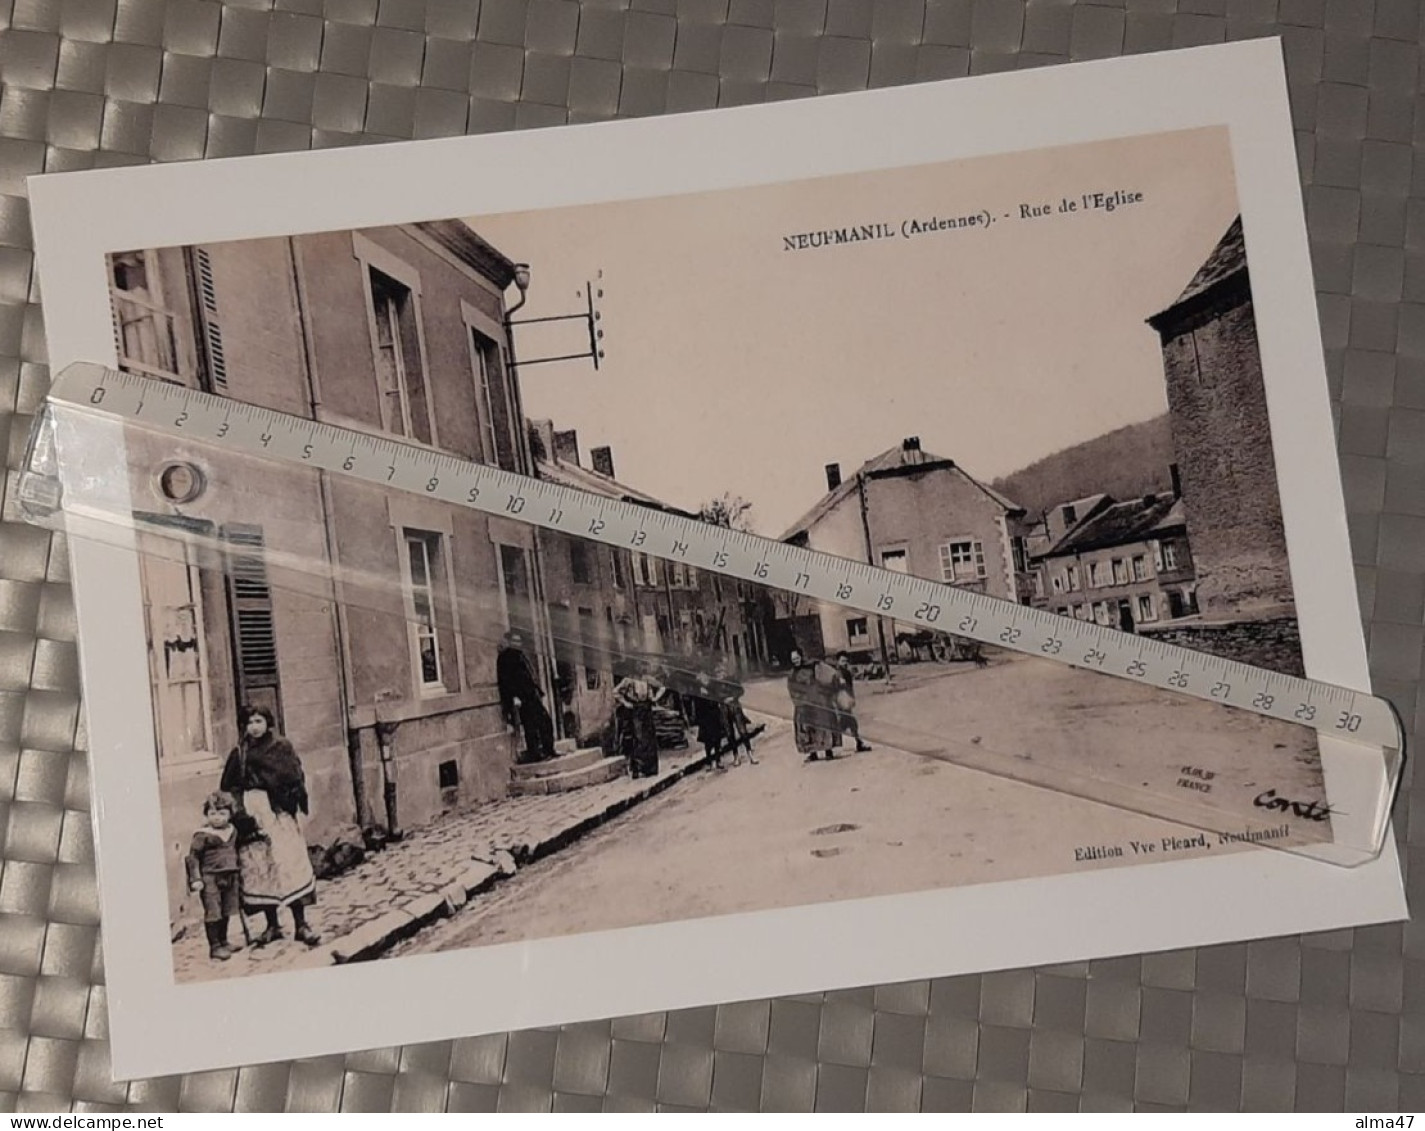 Neufmanil (France Ardennes) - Reproduction Photo A4 Plastifiée - Collection D'expositions - Rue De L'église Très Animée - Lieux